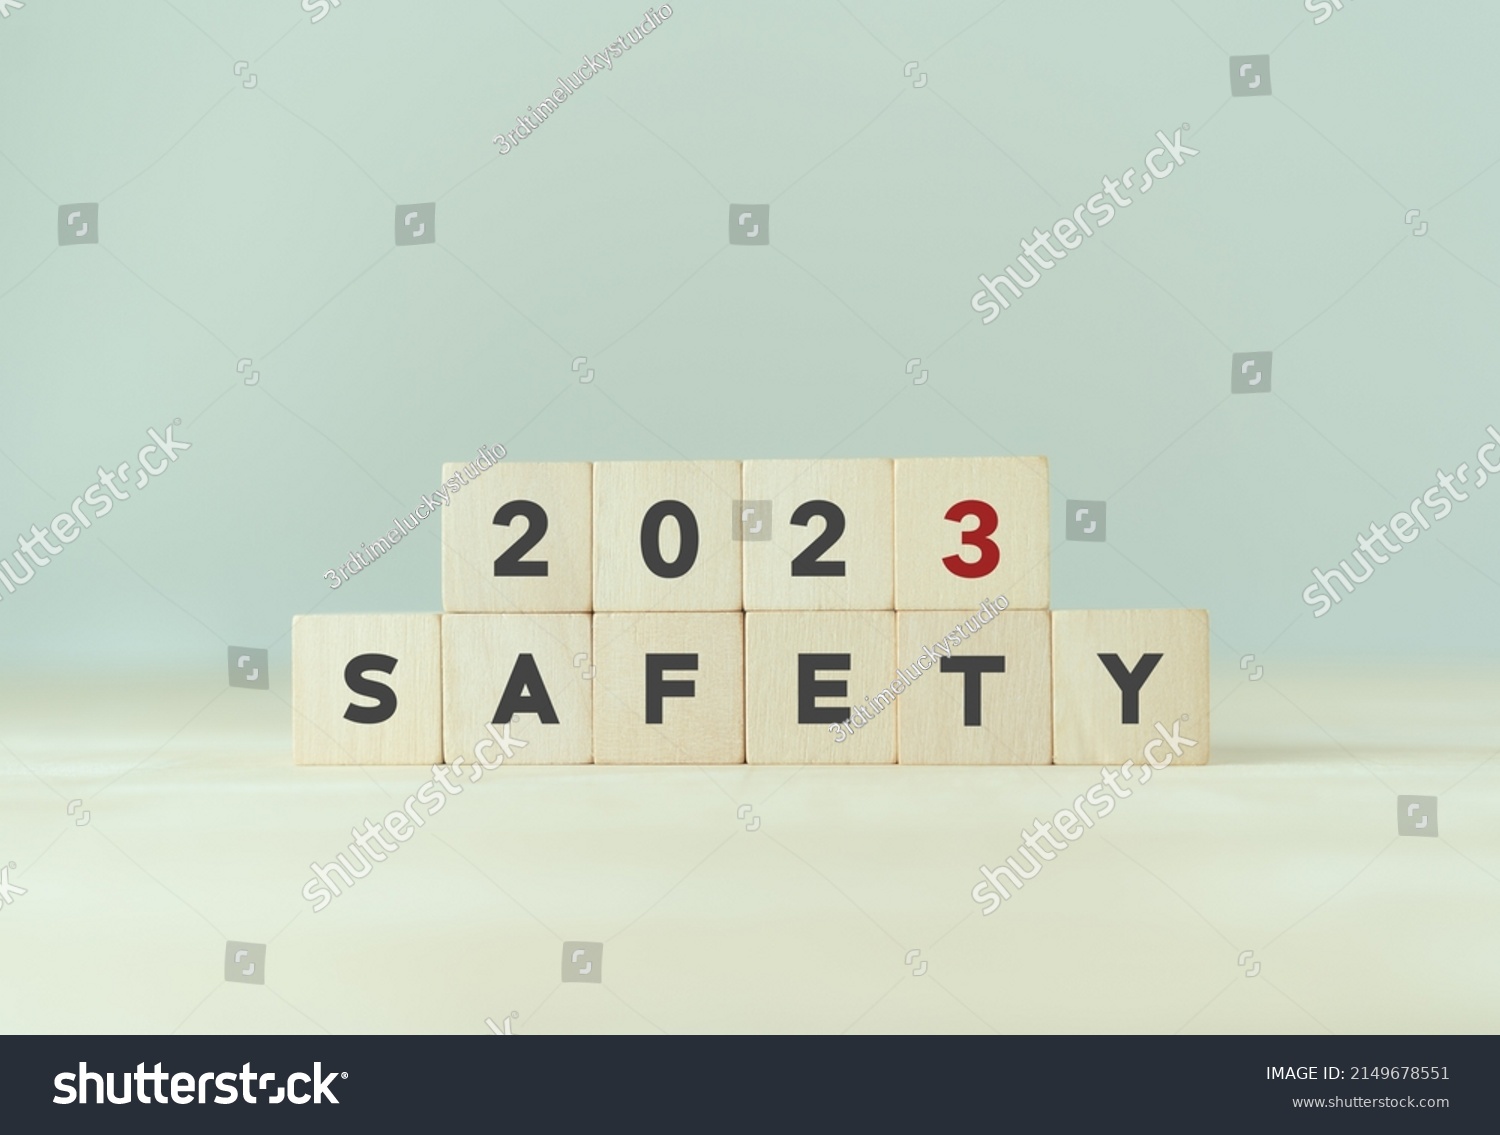 Stock Photo Work Safety In Safety First Caution Work Hazards Danger Surveillance Zero Accident Concept 2149678551 